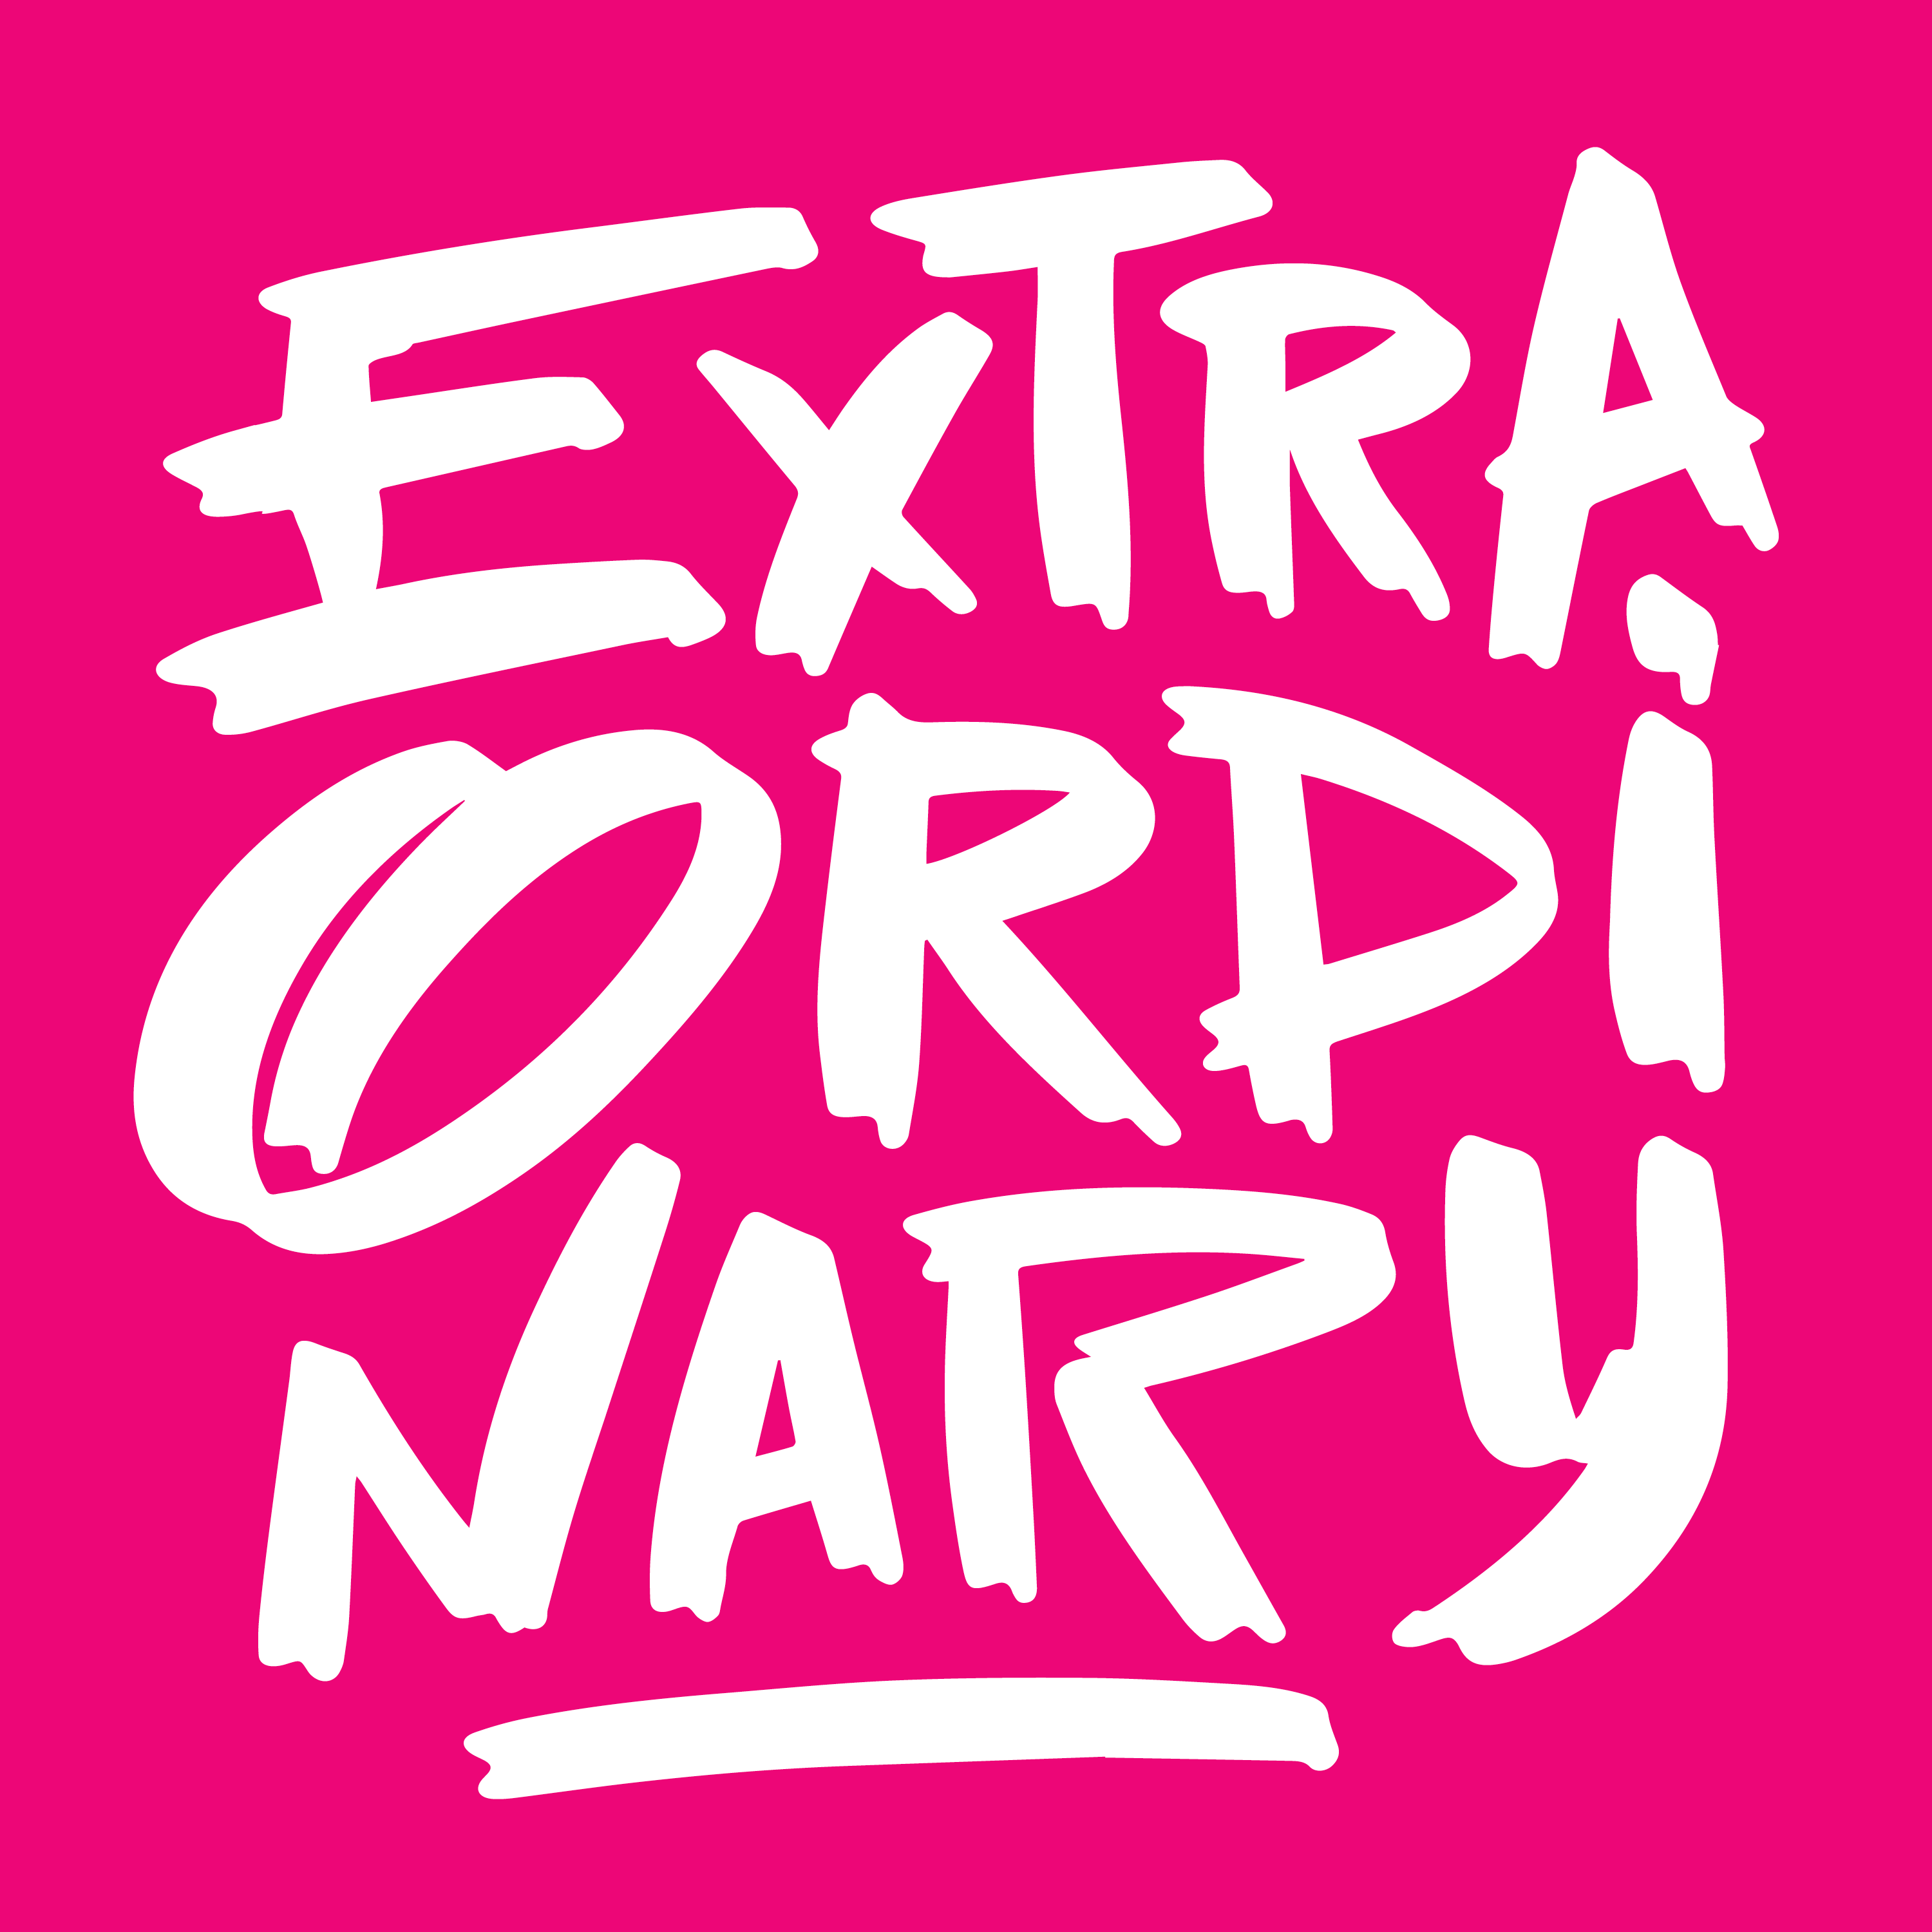 EO - Extra Ordinary